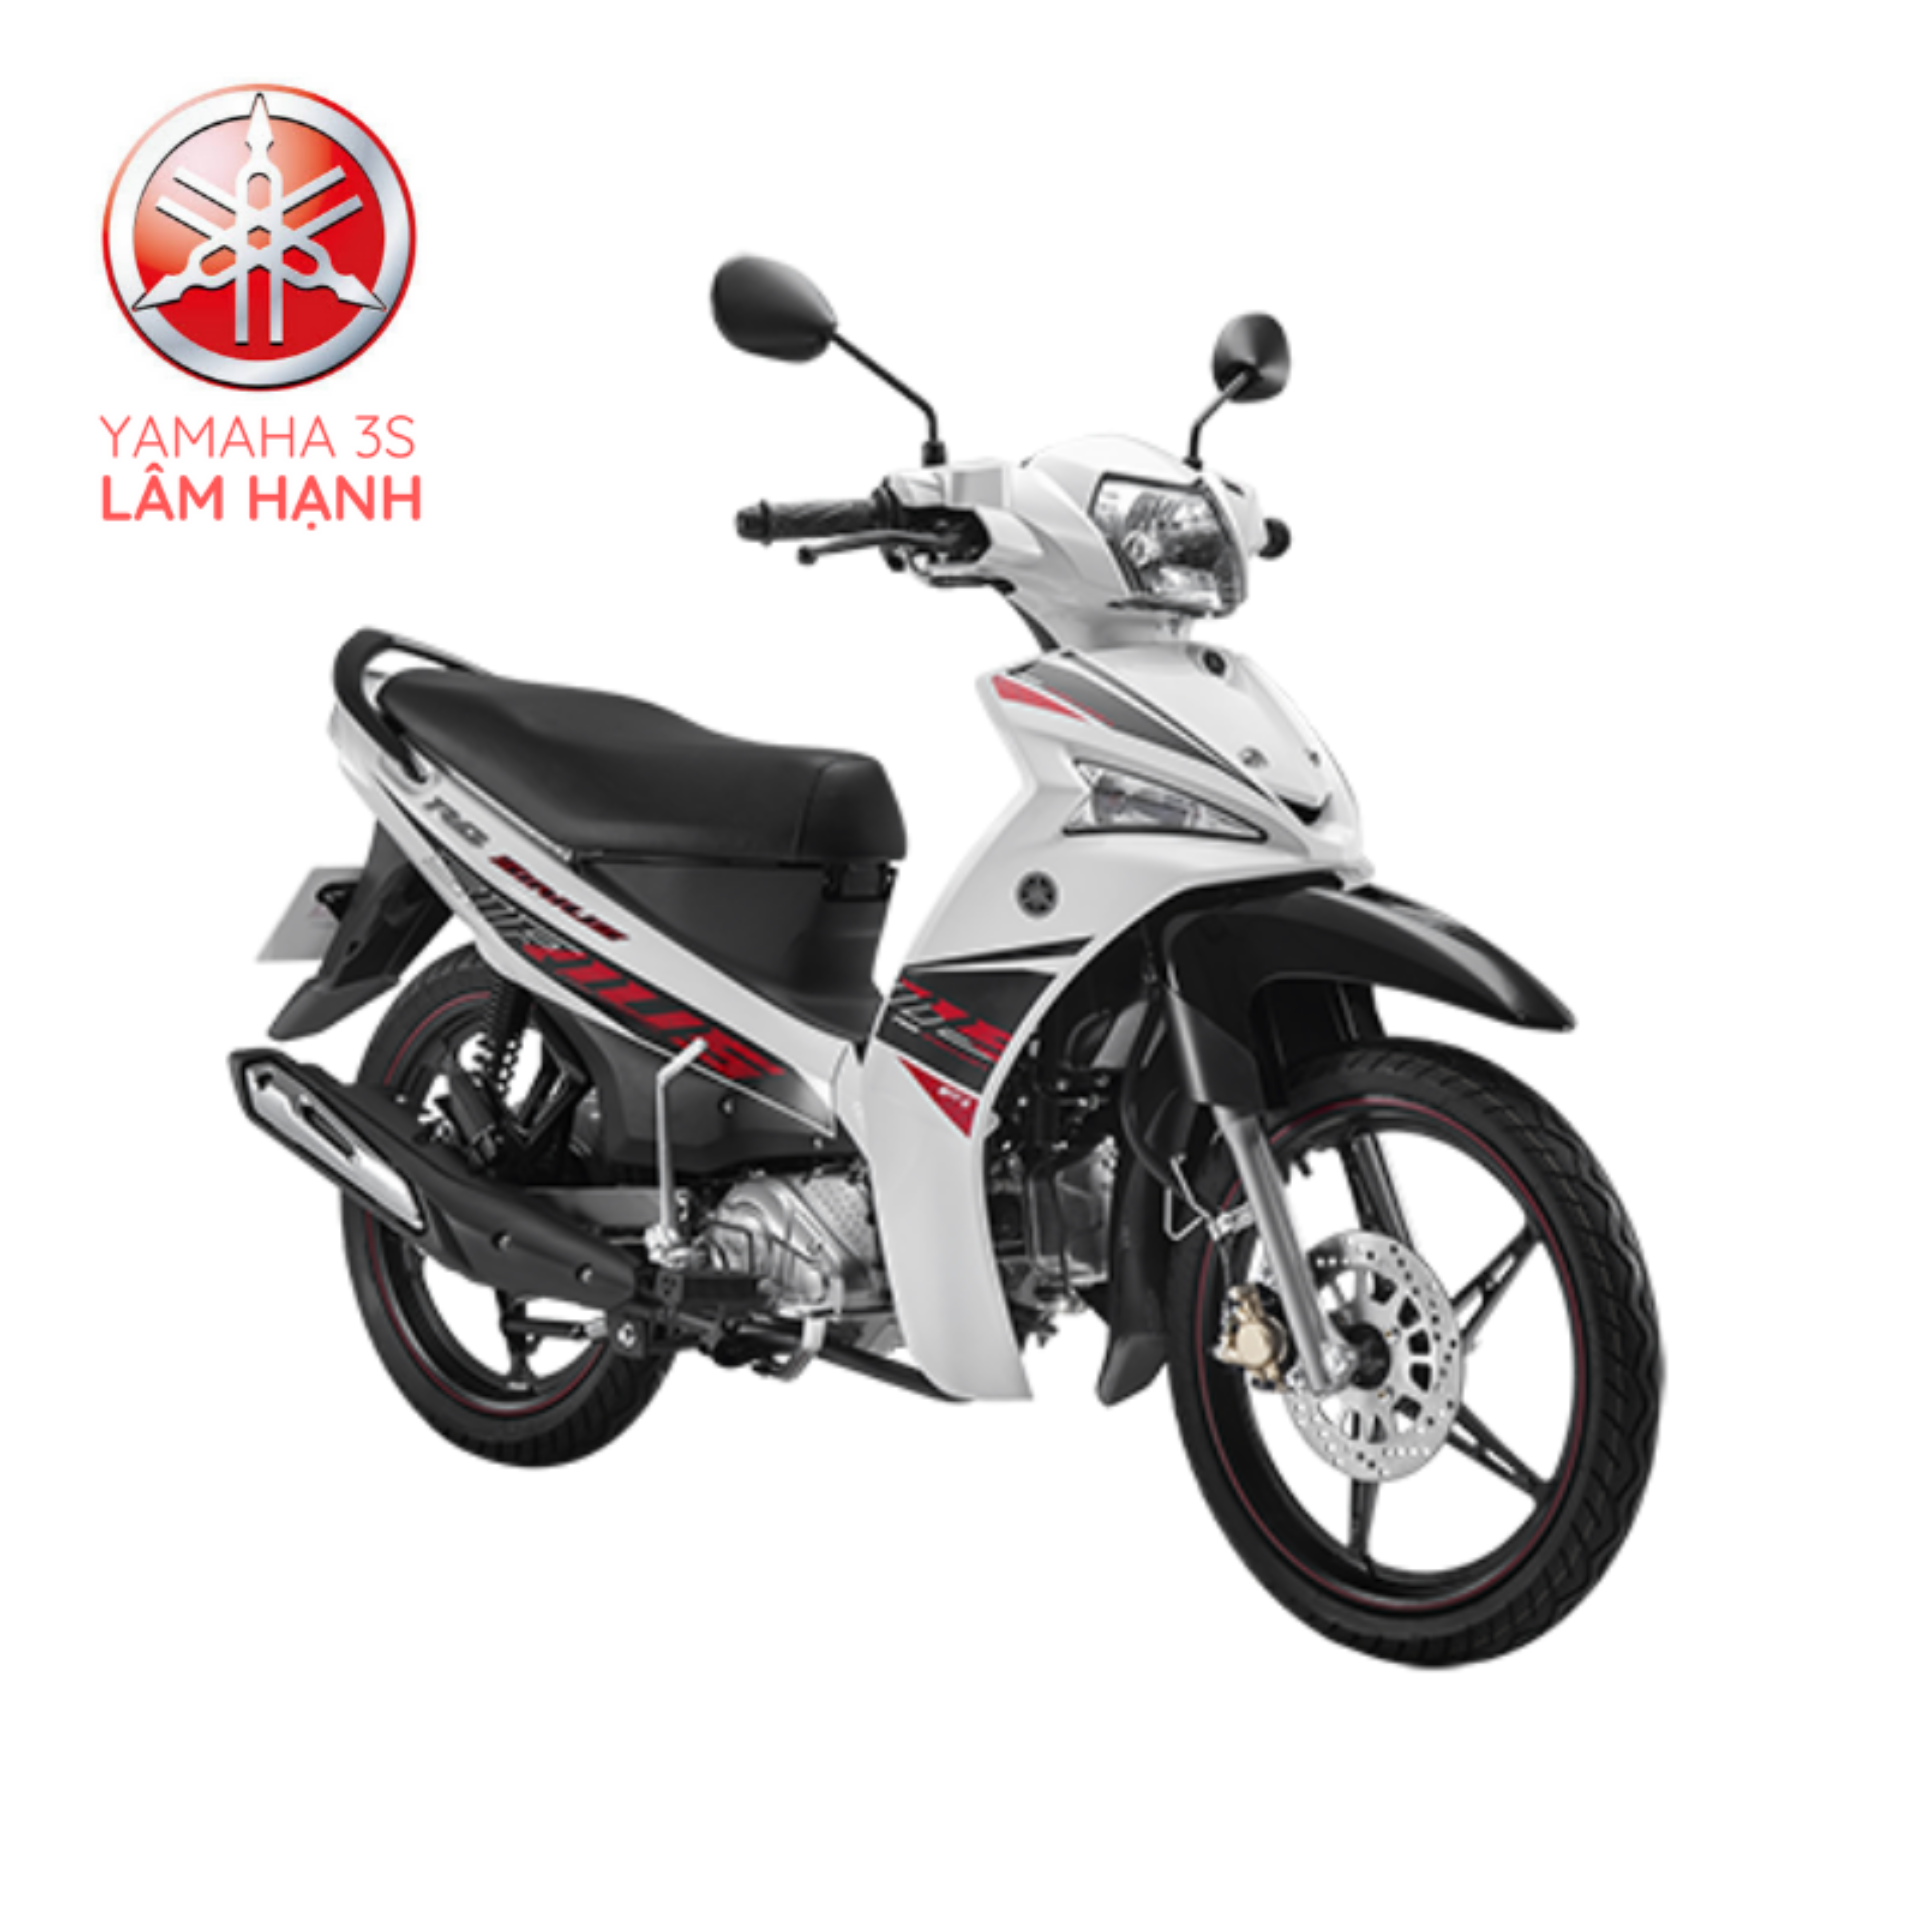 Bảng giá xe máy Yamaha Sirius 2020 mới nhất giữa tháng 92020